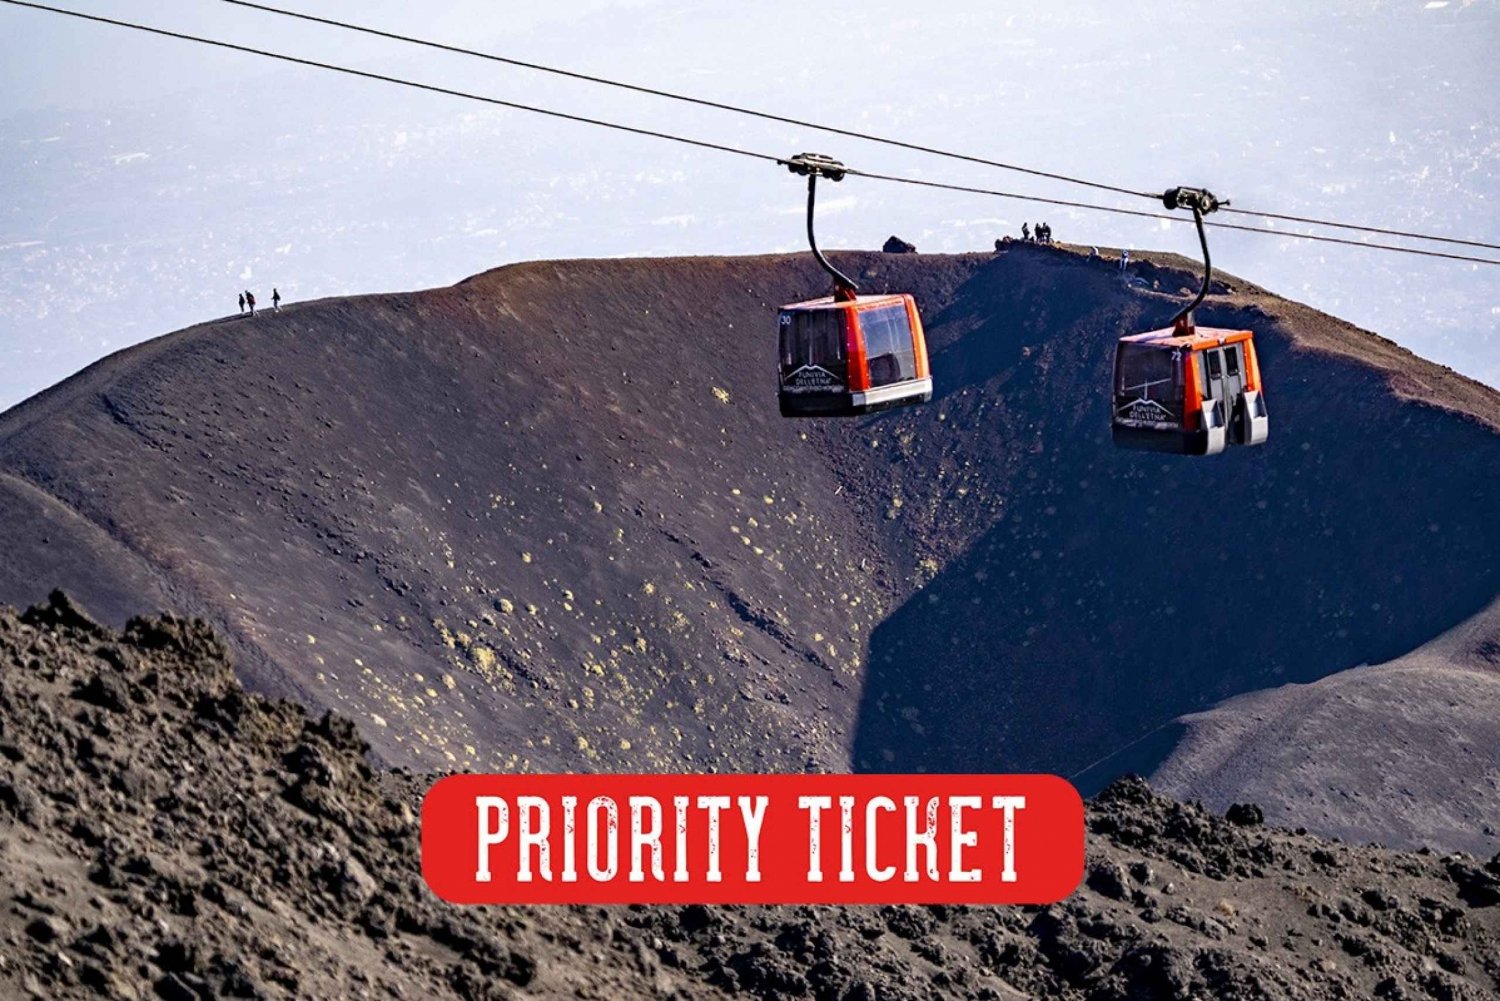 Funivia dell'Etna : Billet aller-retour prioritaire en téléphérique